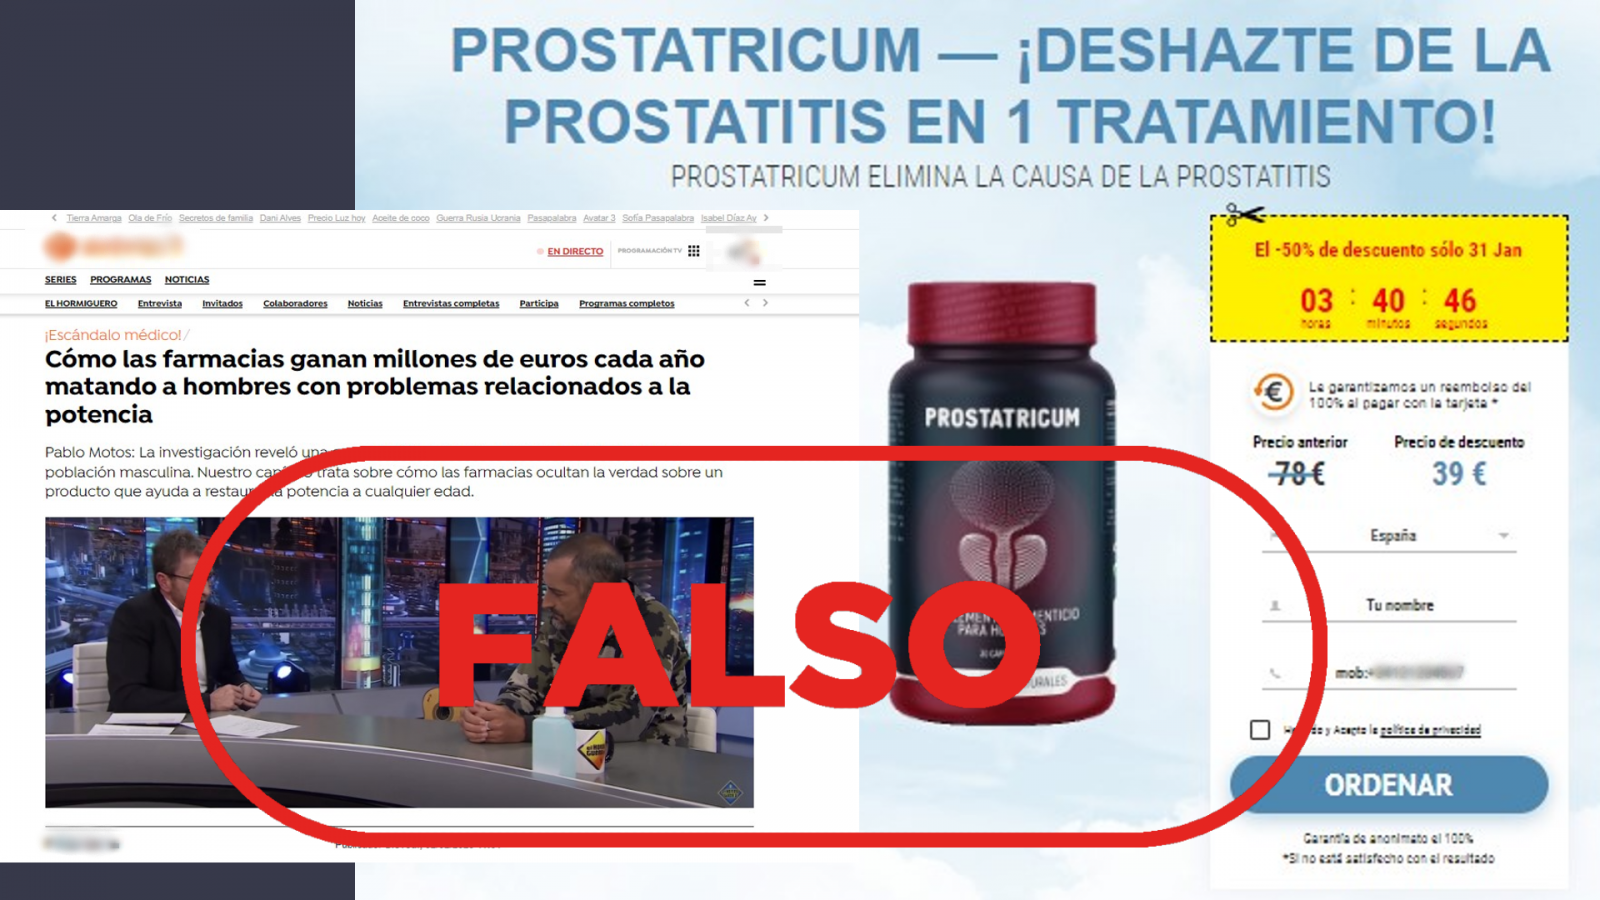 Imágenes de dos portales web que difunden un falso remedio contra la impotencia y la prostatitis llamado Prostatricum. Con el sello falso.